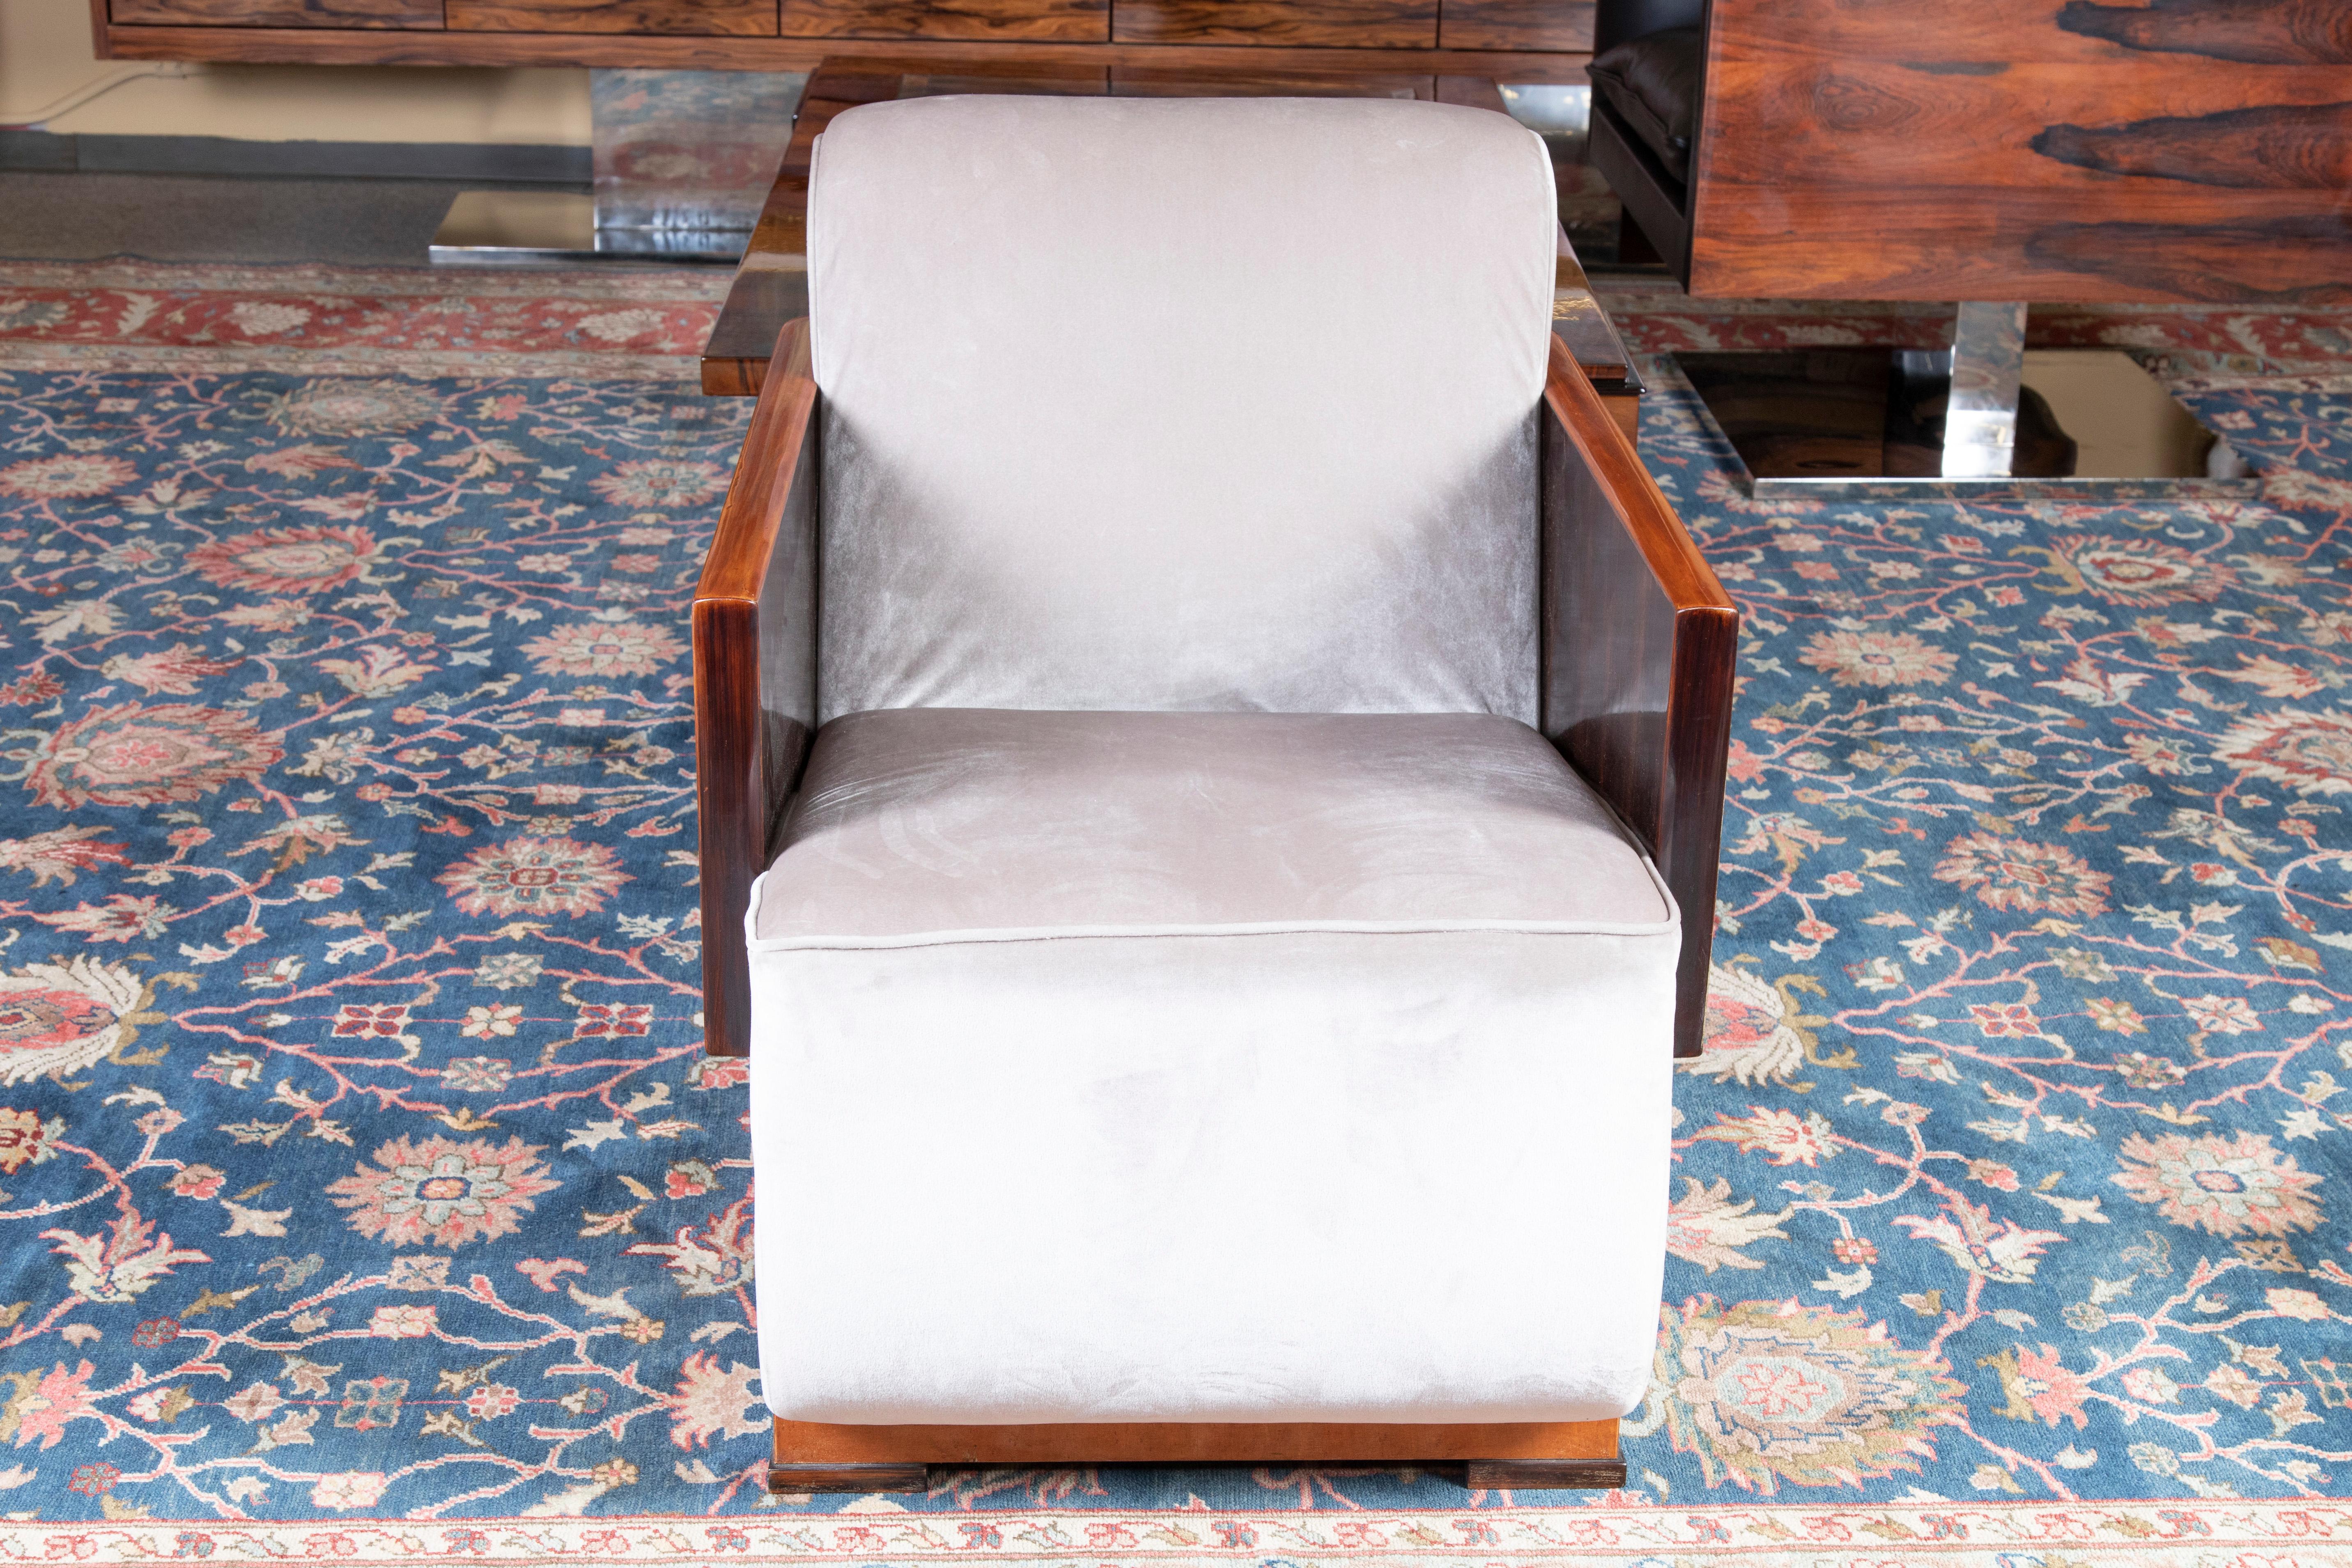 Les fauteuils sont fabriqués en bois de noyer et retapissés dans un tissu velouté léger. Les bras de la chaise sont fabriqués en bois massif. Sur le côté, on peut voir de belles veines de bois. La chaise repose sur les 4 pieds carrés en bois. 
Le